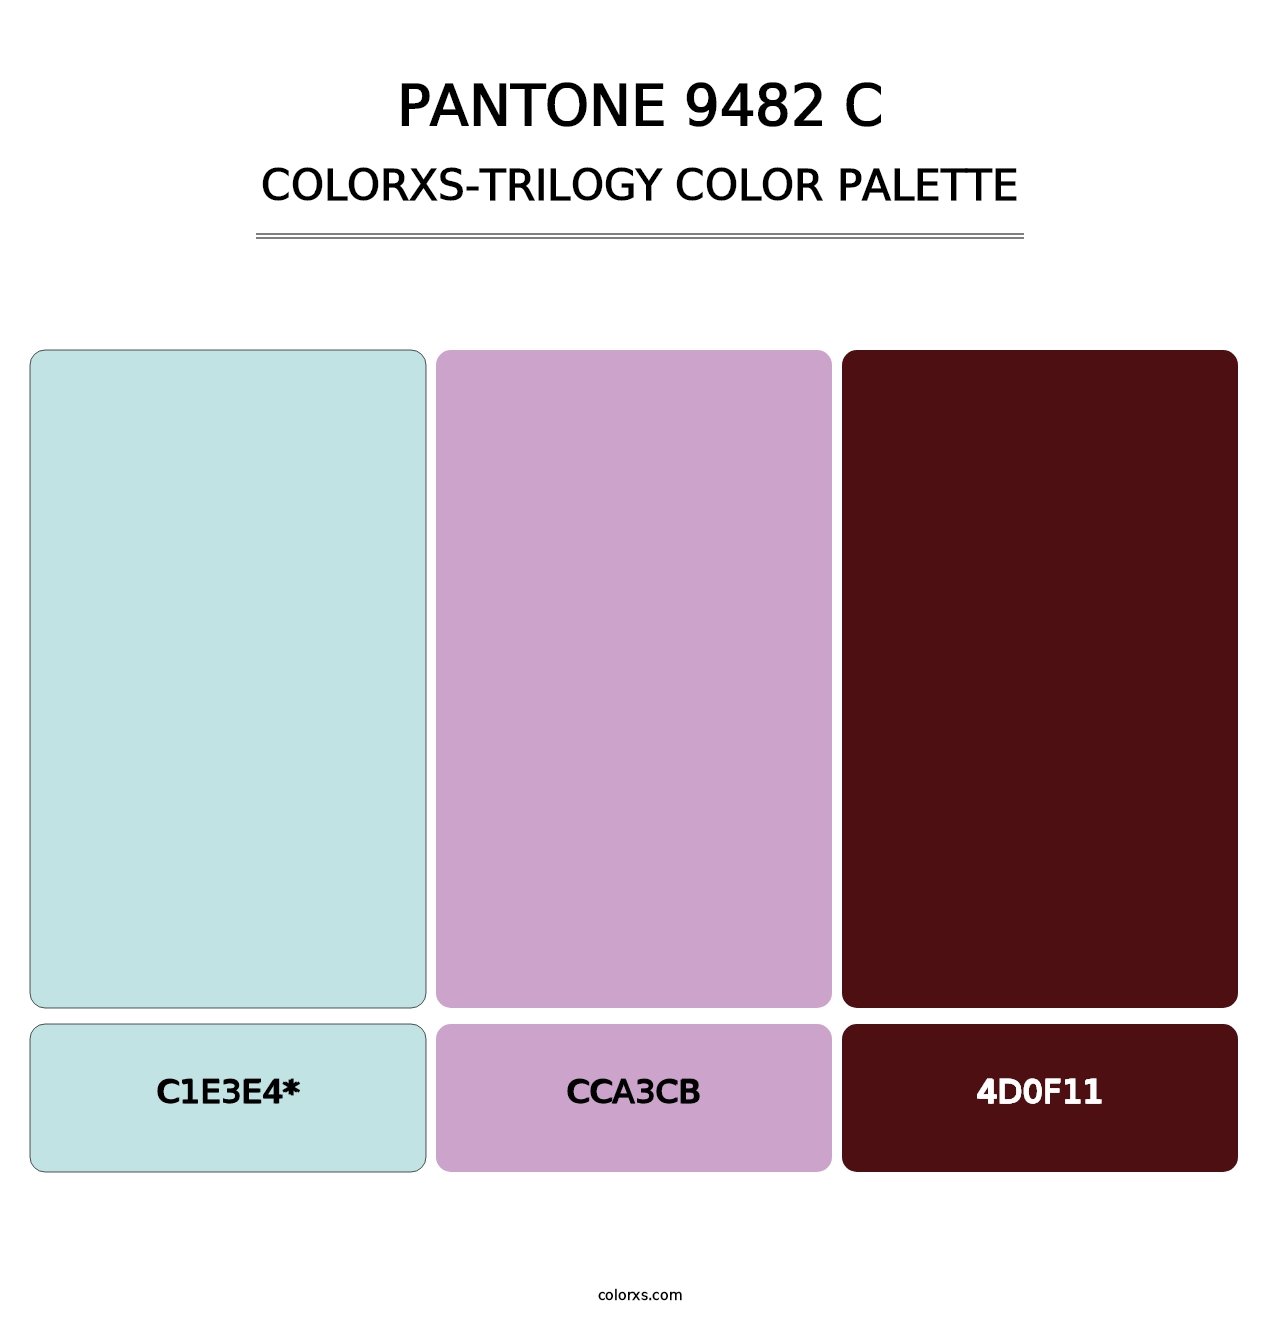 PANTONE 9482 C - Colorxs Trilogy Palette